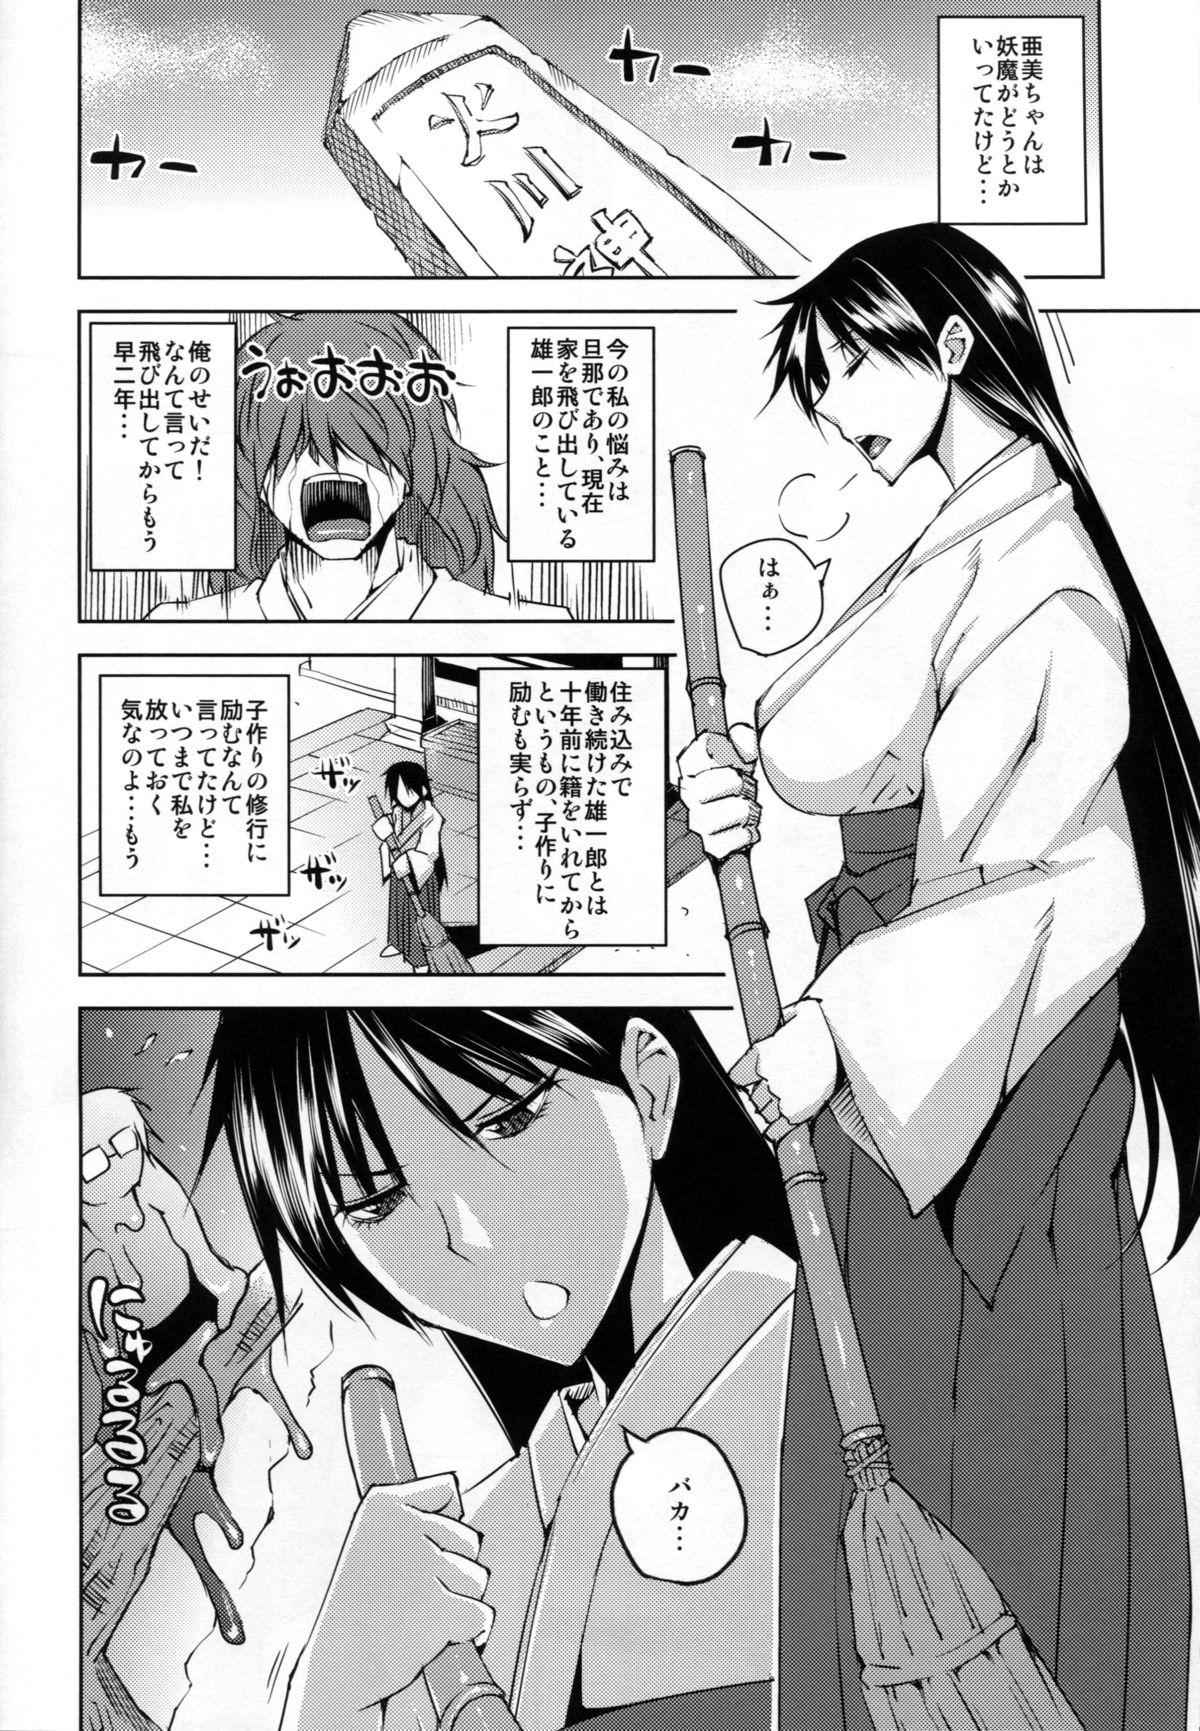 Gay Shop 20 Nengo no, Sailor Senshi o Kakyuu Youma no Ore ga Netoru 2 - Sailor moon Nalgas - Page 5